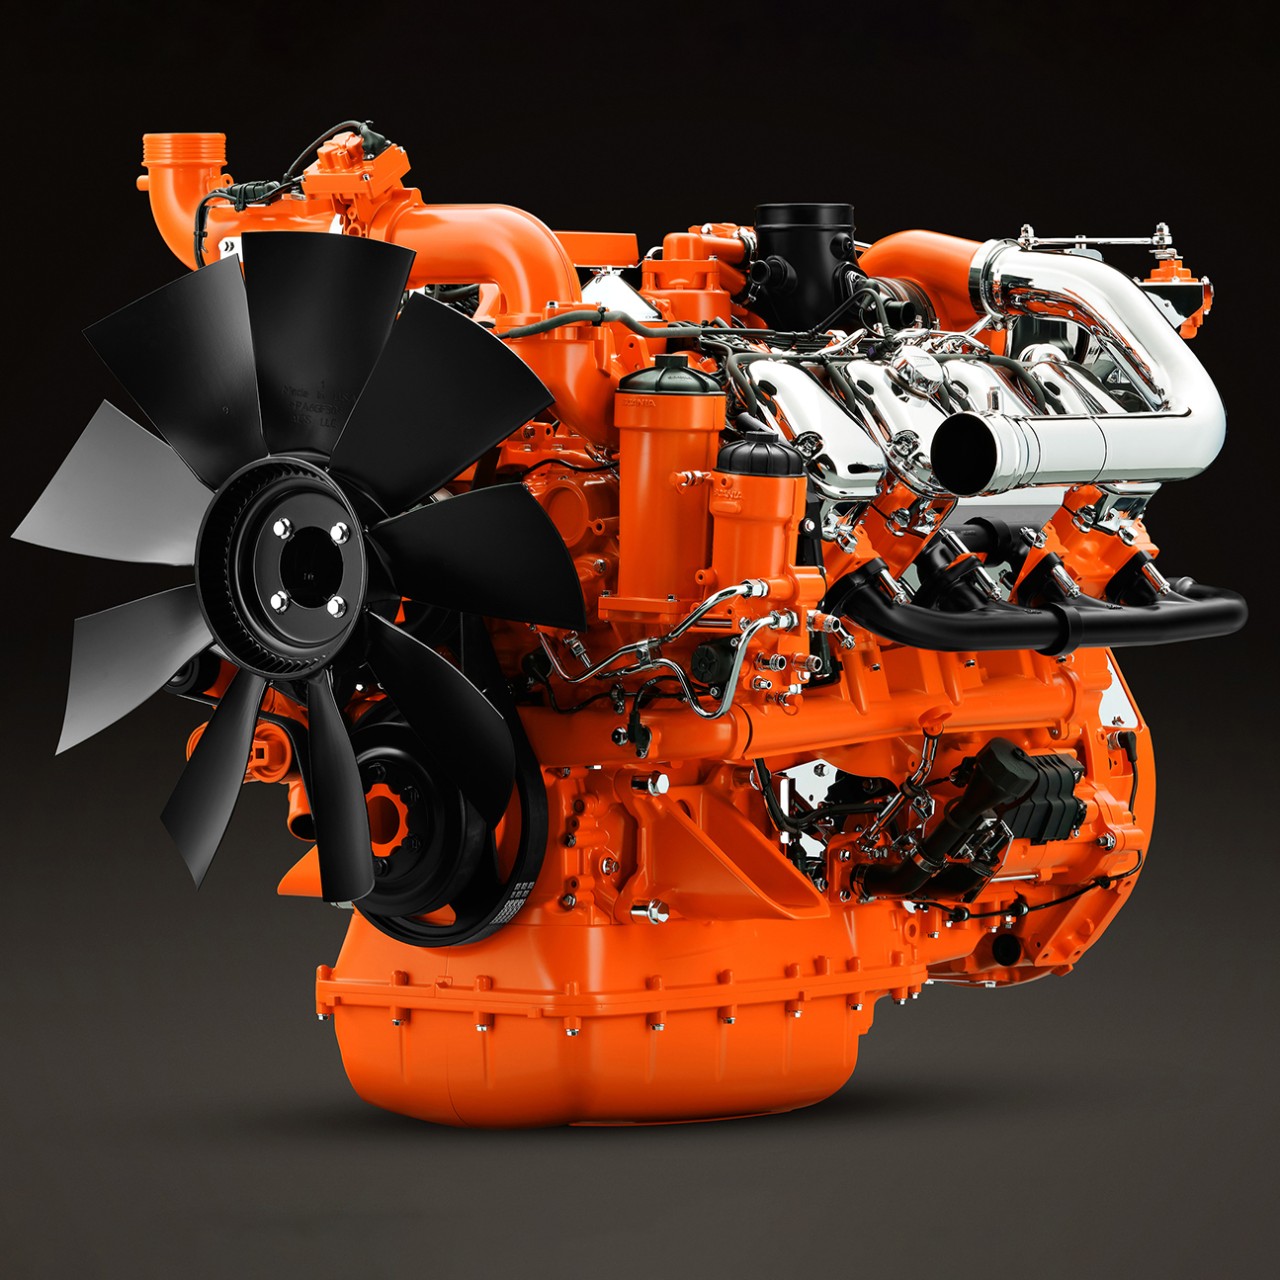  Motor industrial Scania de 16 litros